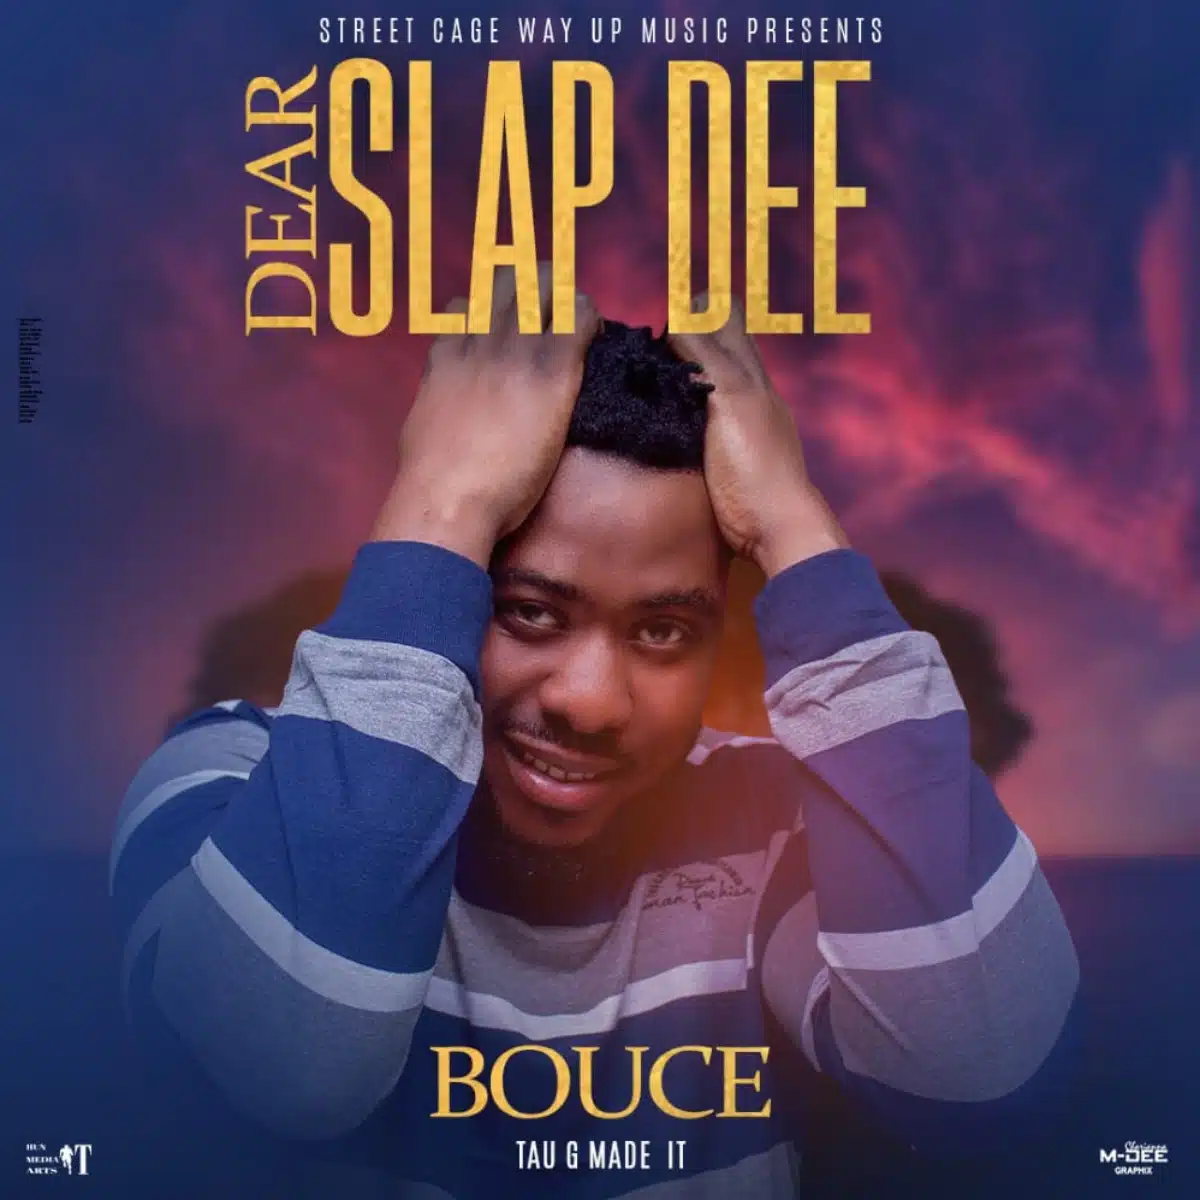 DOWNLOAD: (YBM) Bouce – “Dear Slap Dee” Mp3